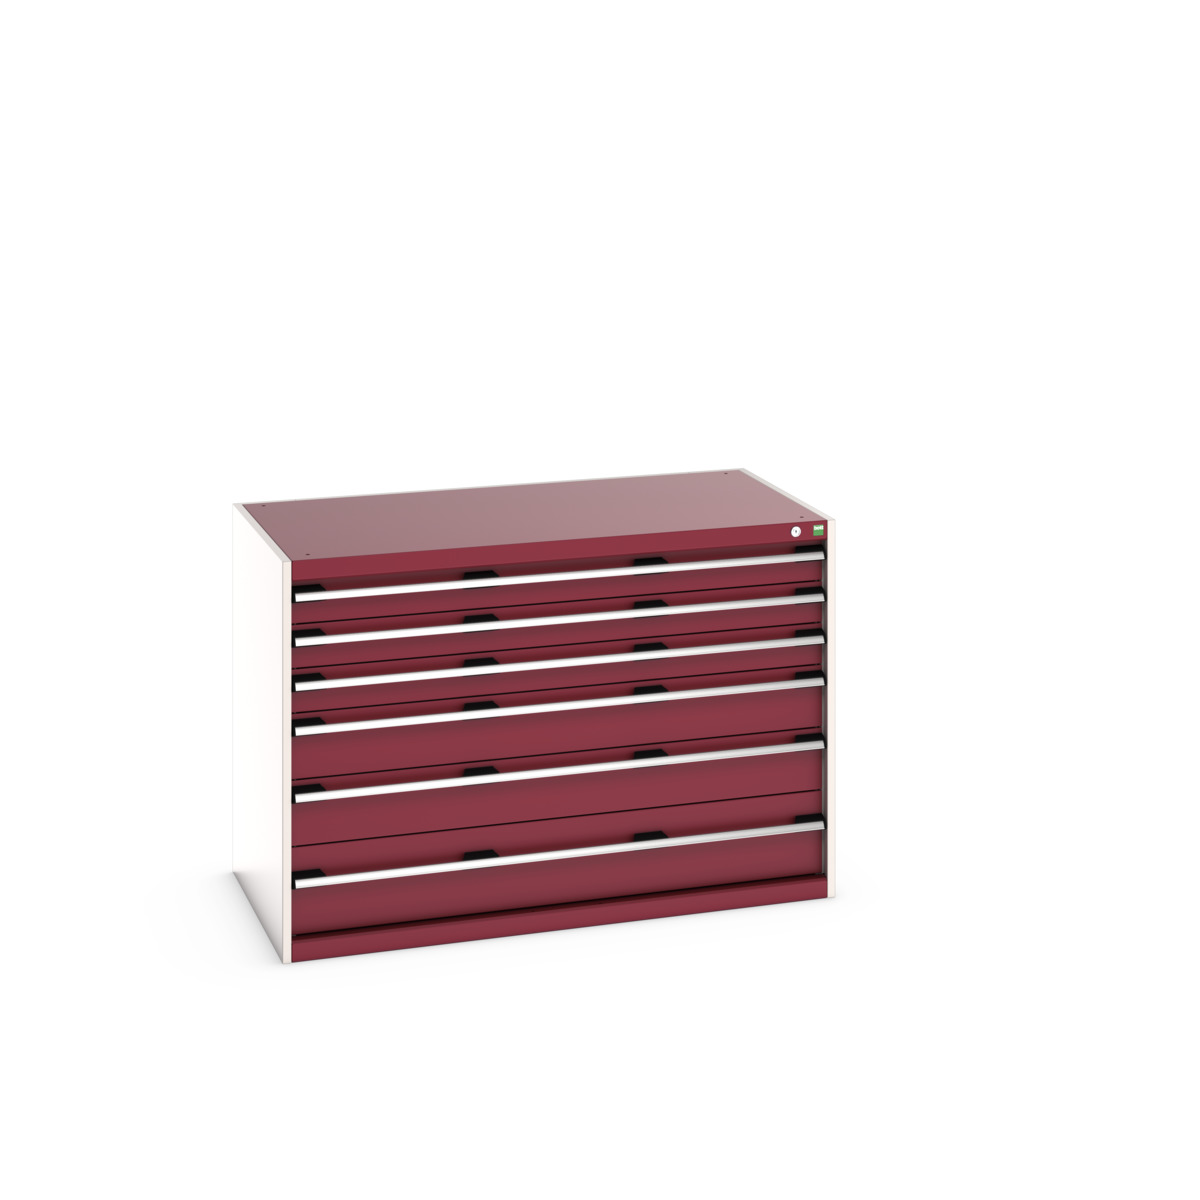 40030086.24V - cubio drawer cabinet